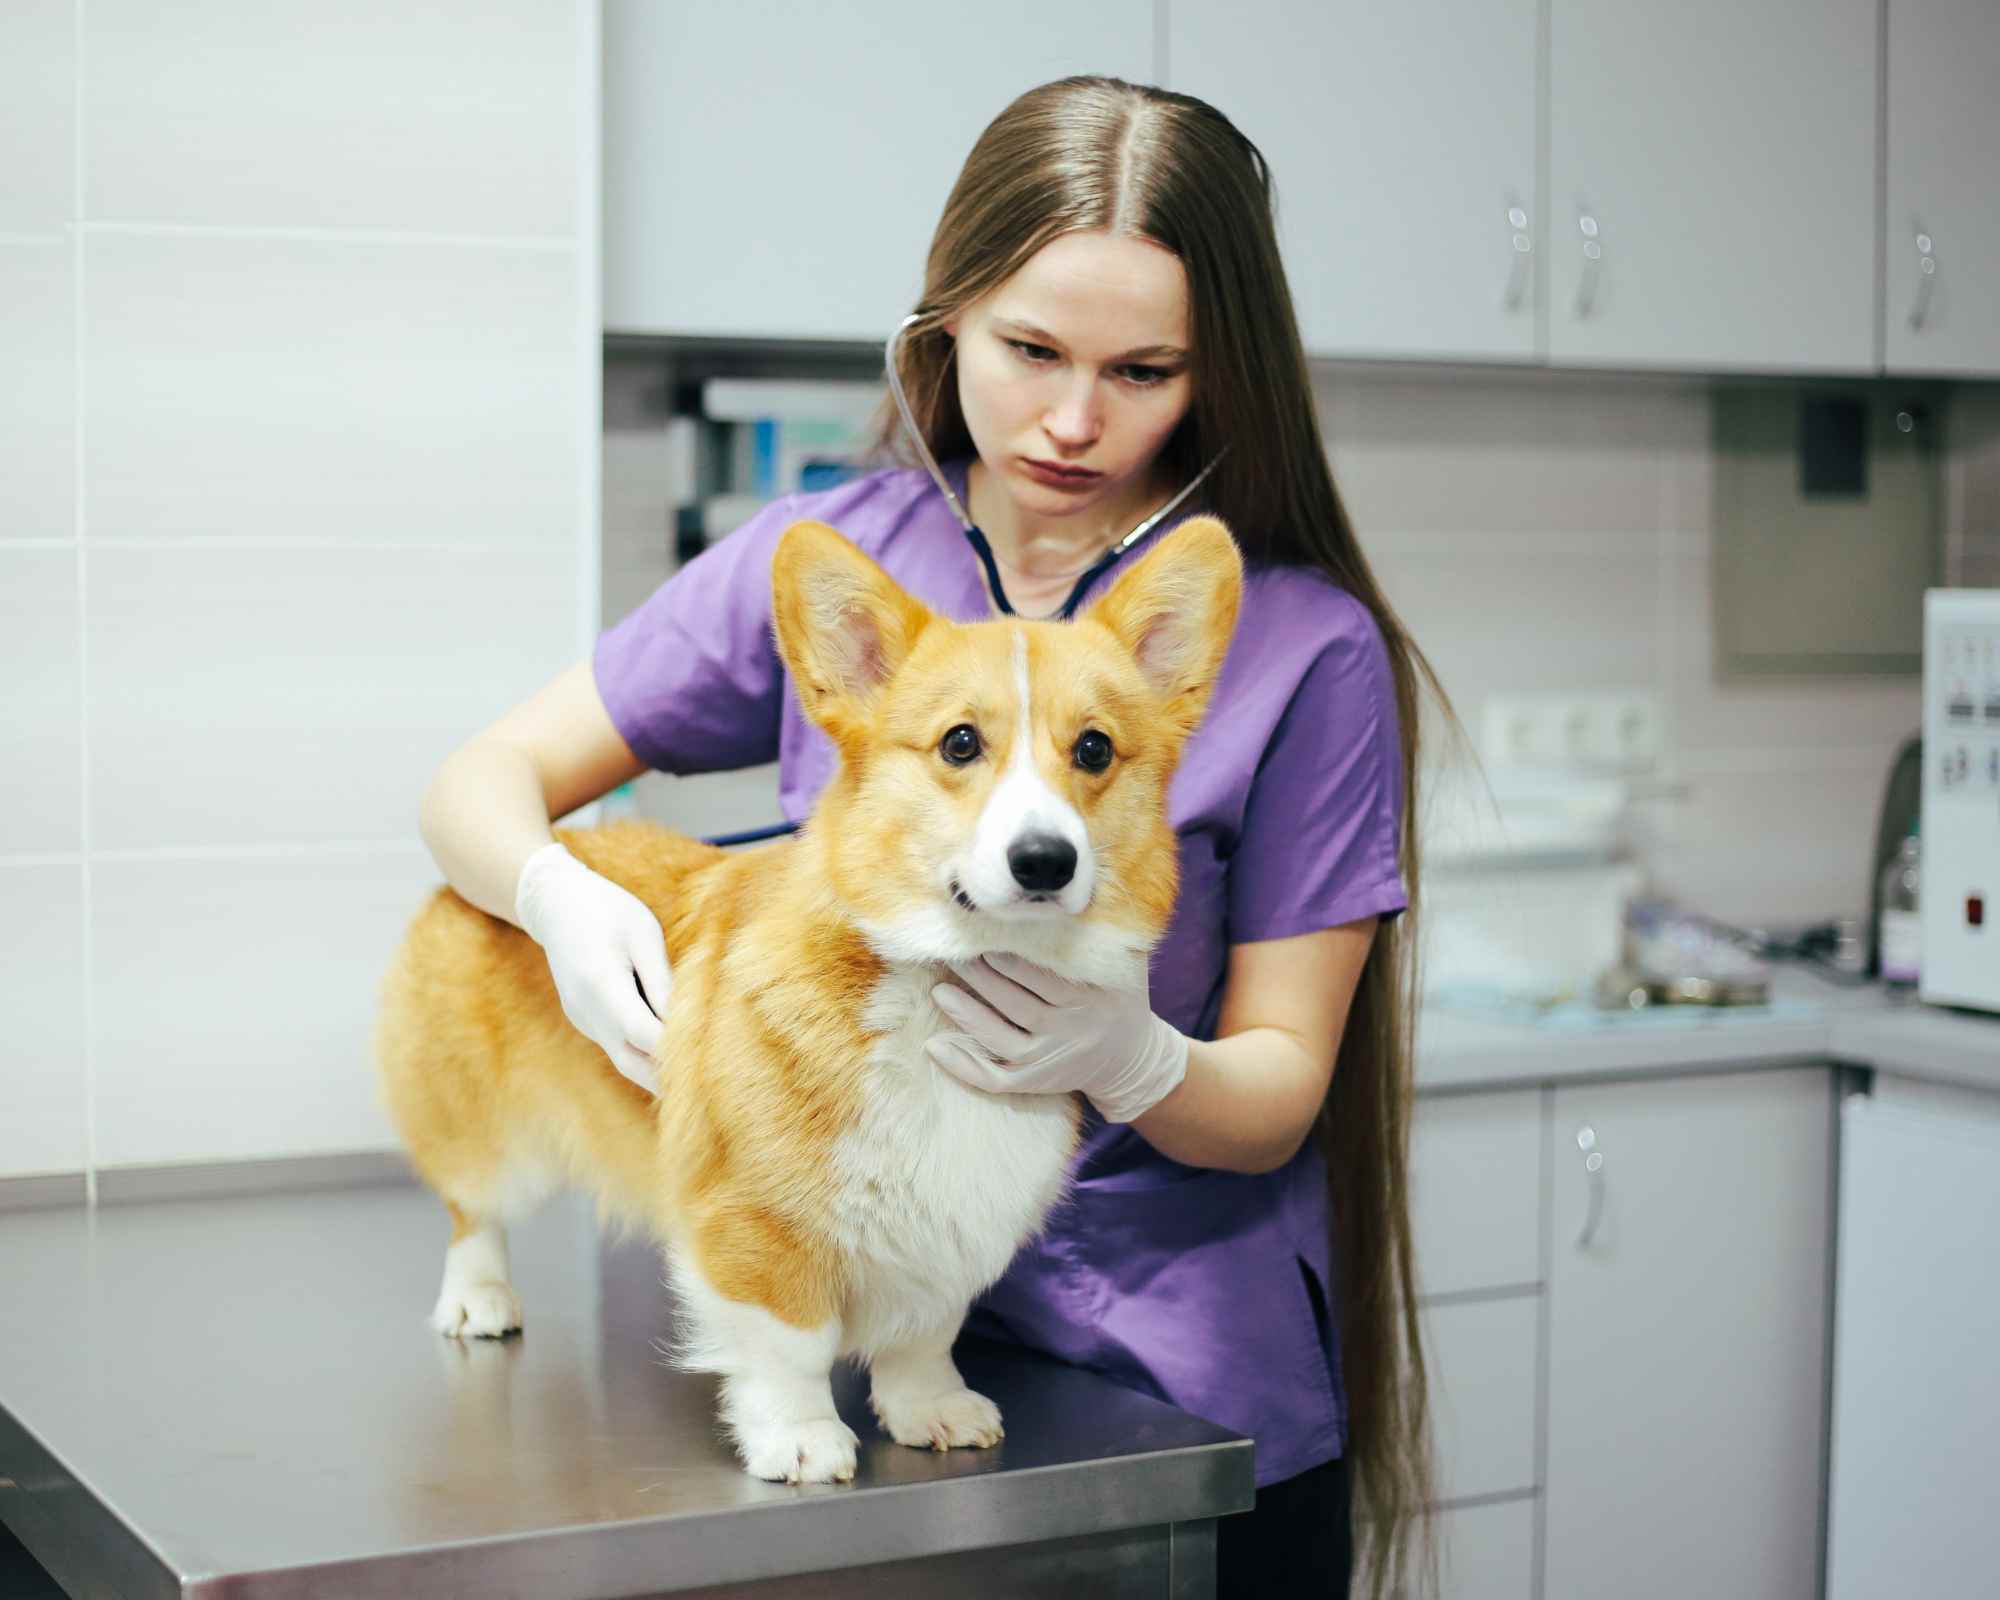 soins vétérinaires